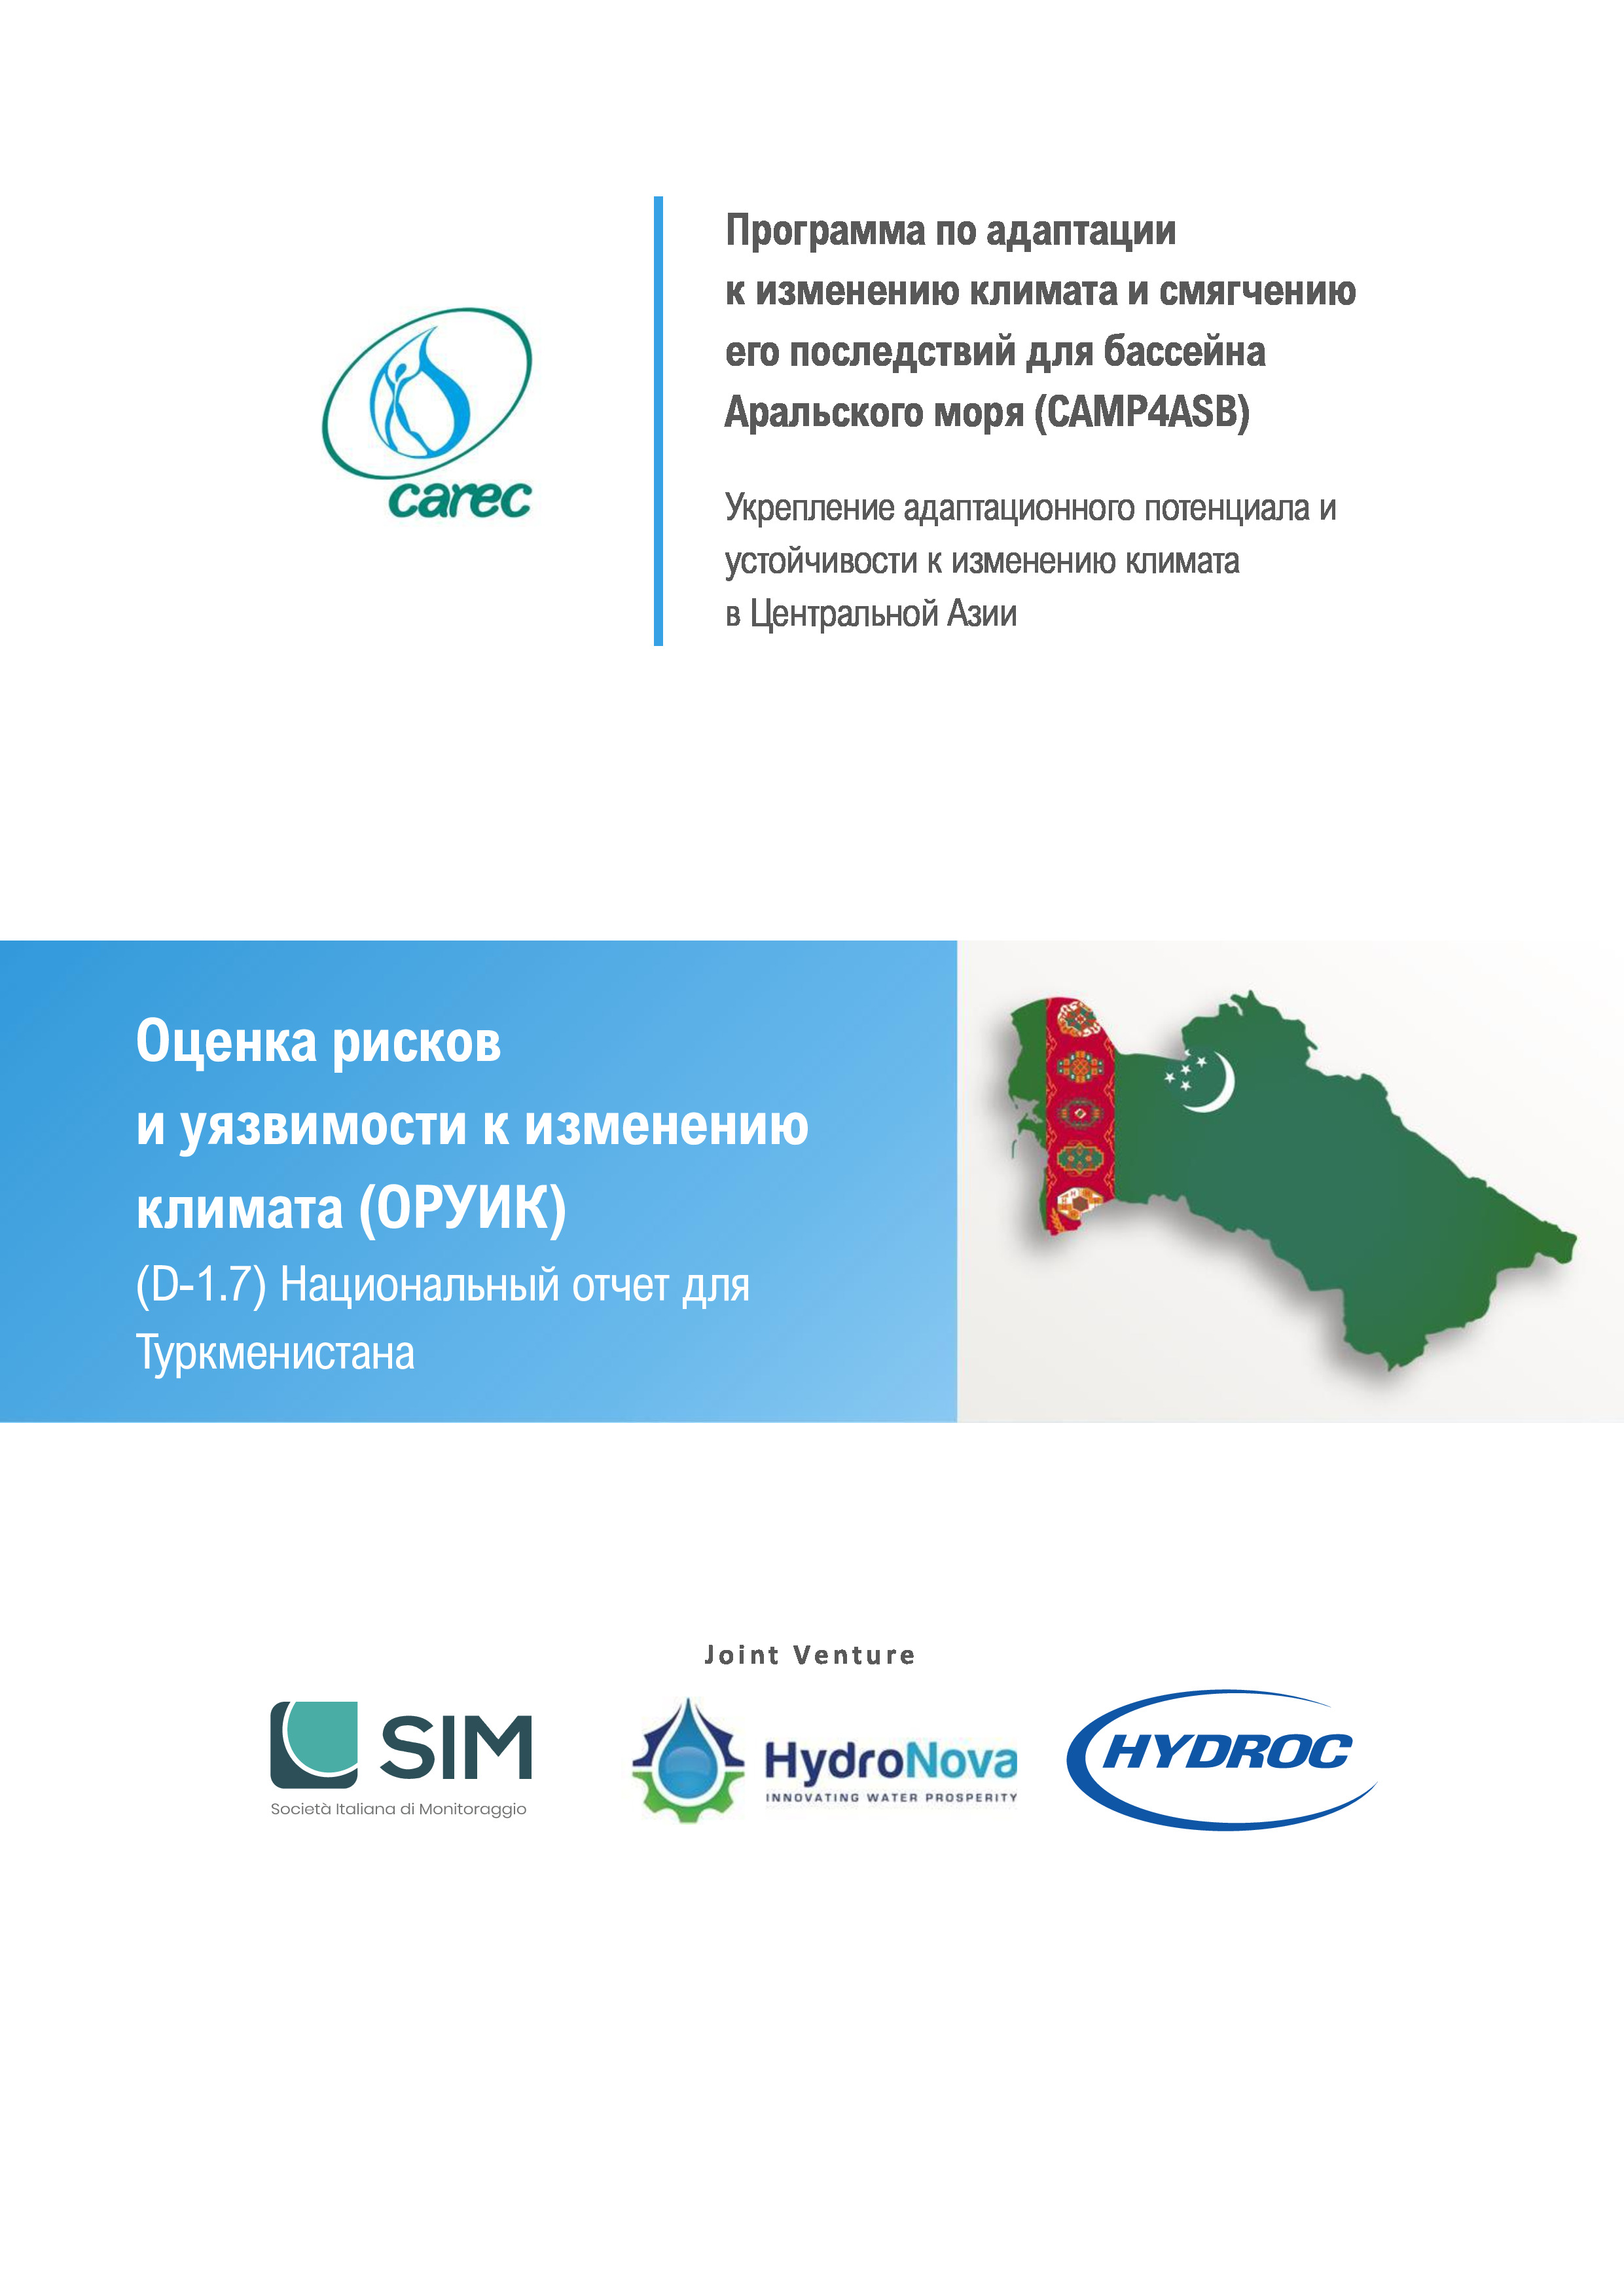 Оценка рисков и уязвимости к изменению климата (ОРУИК). Национальный отчет для Туркменистана, 2021